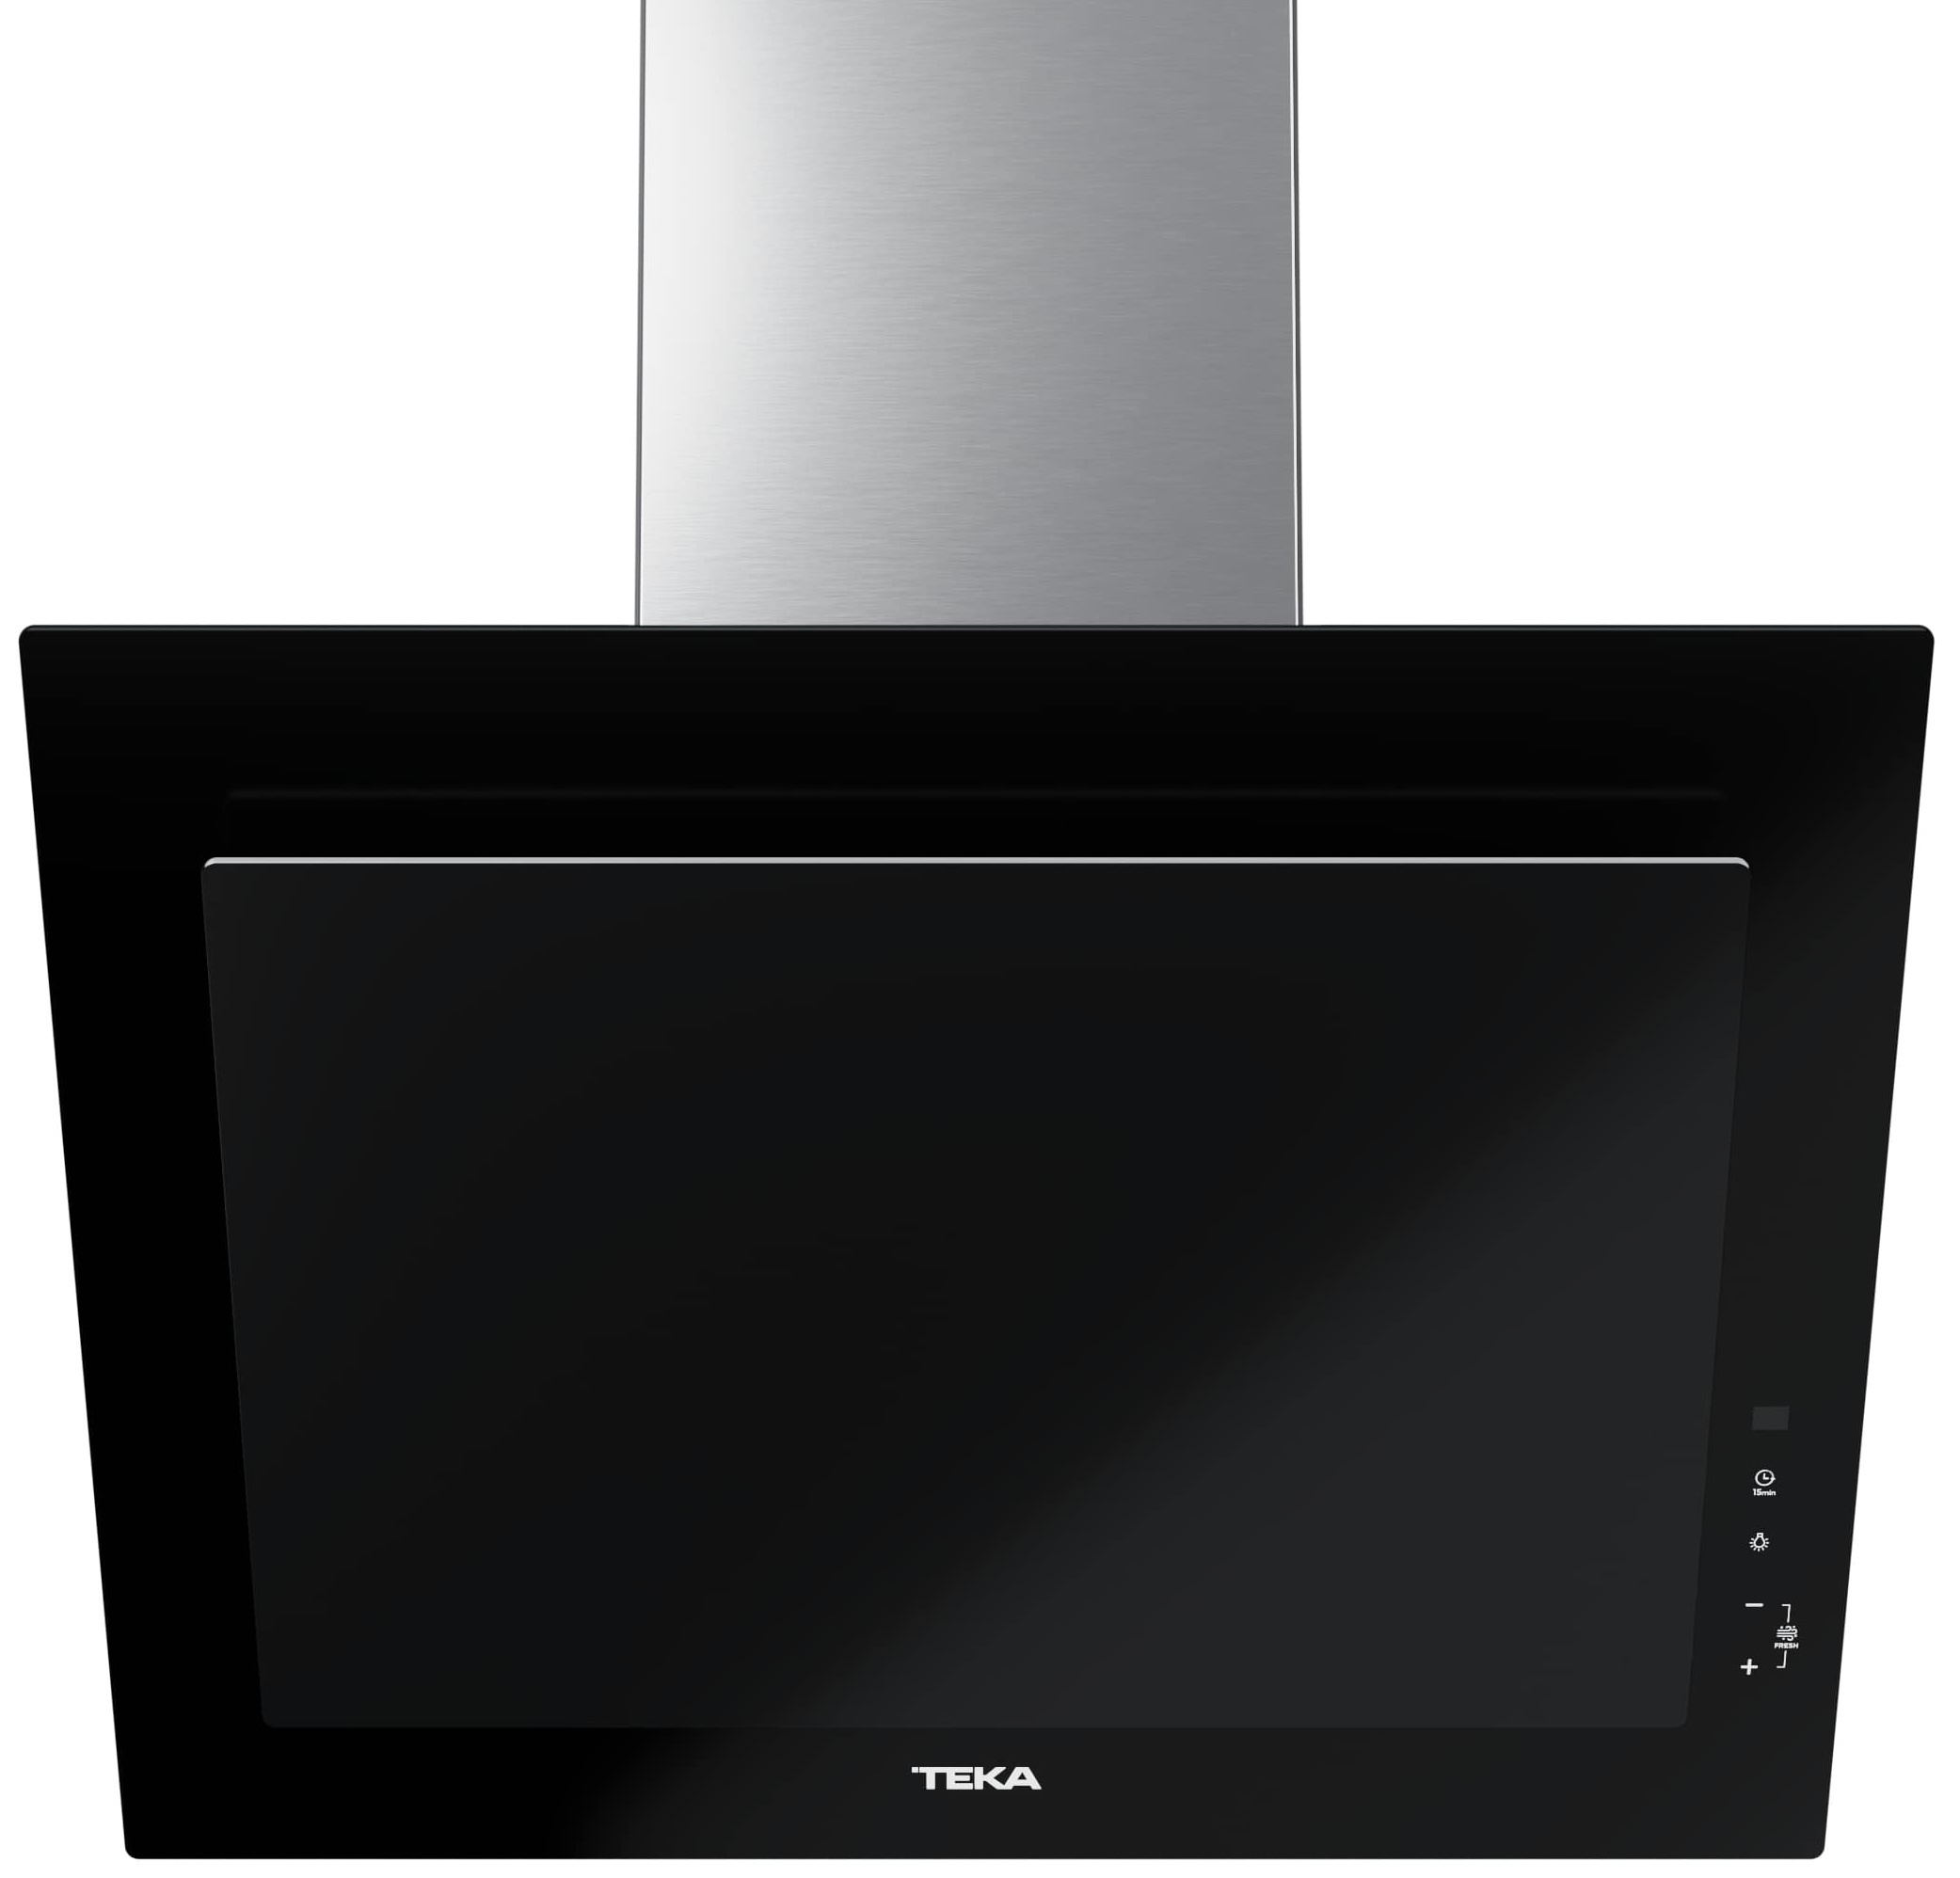 Вытяжка Teka кухонная Teka DVT Pro 68660 TBS BK